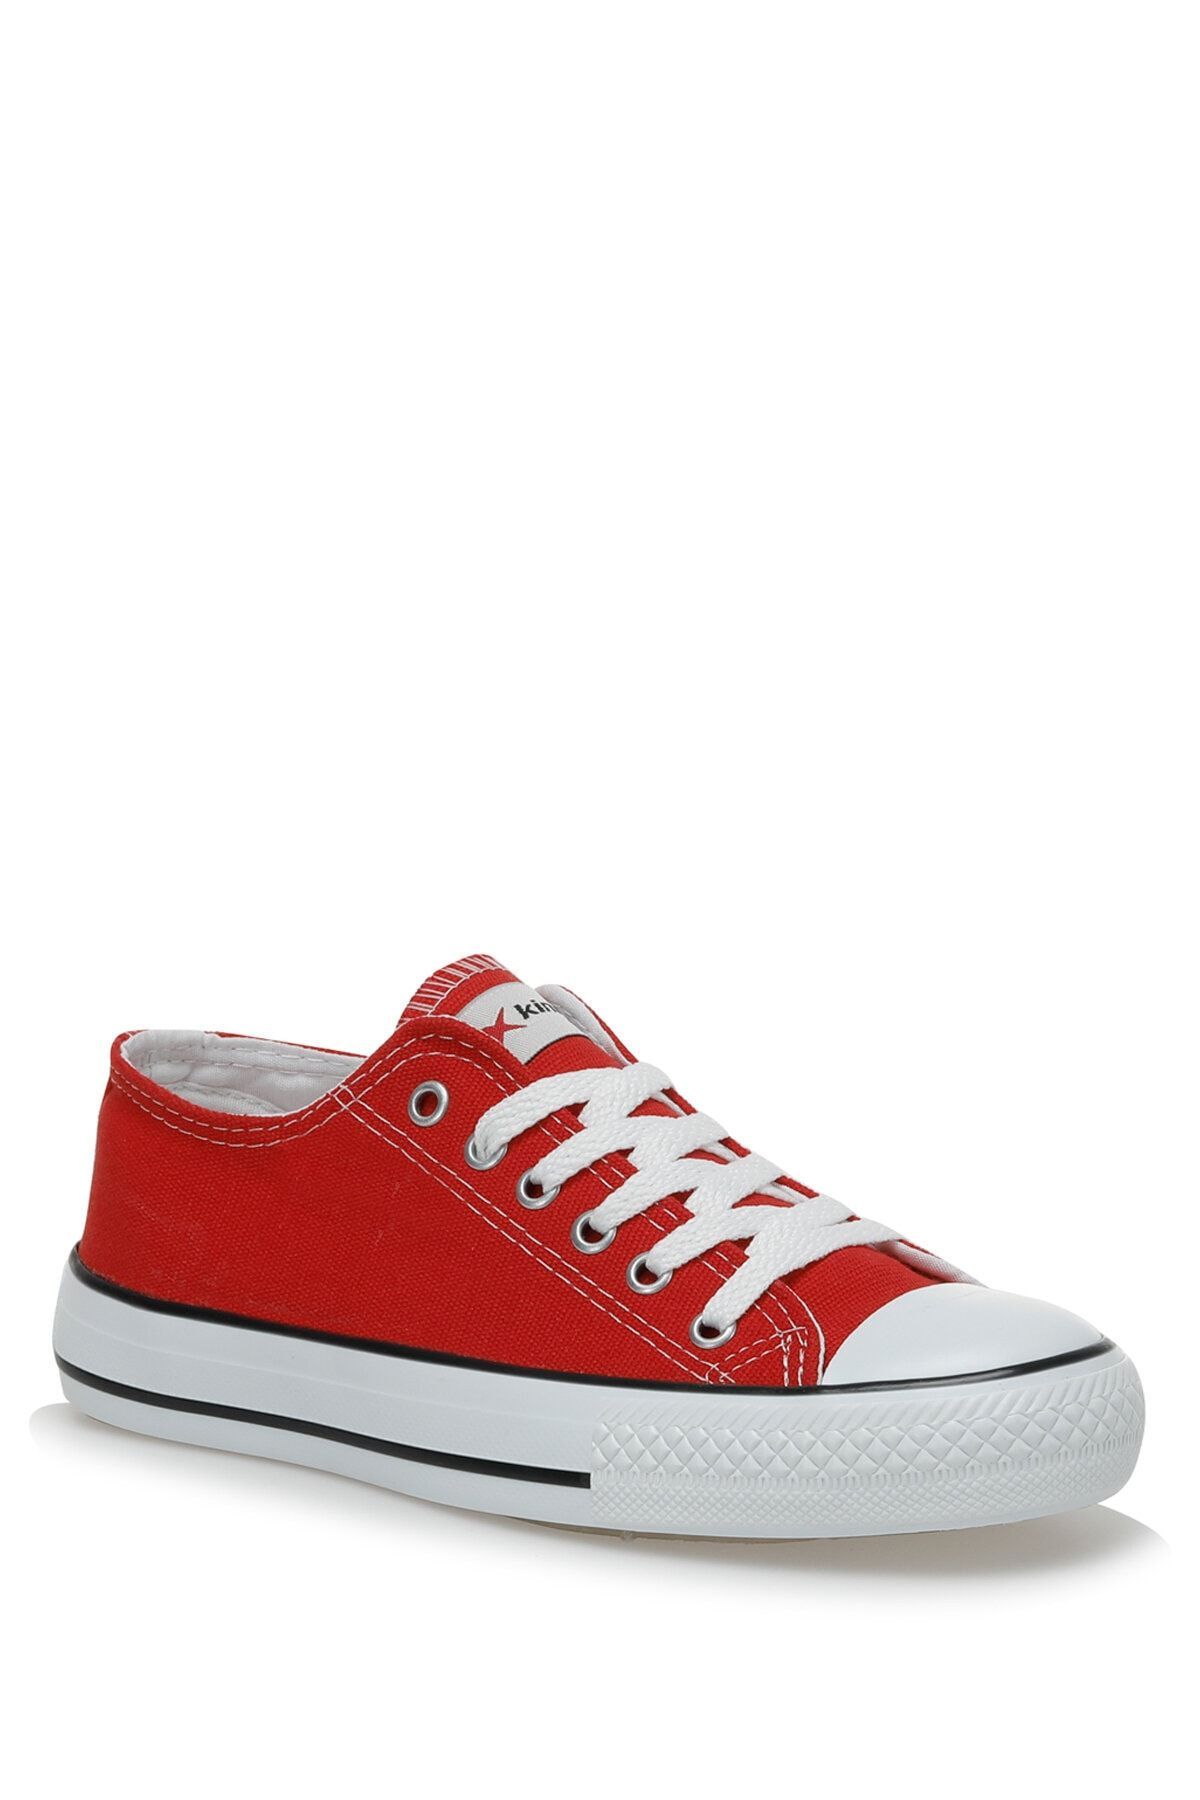 Kinetix Fowler Tx W 3fx Kırmızı Kadın Sneaker